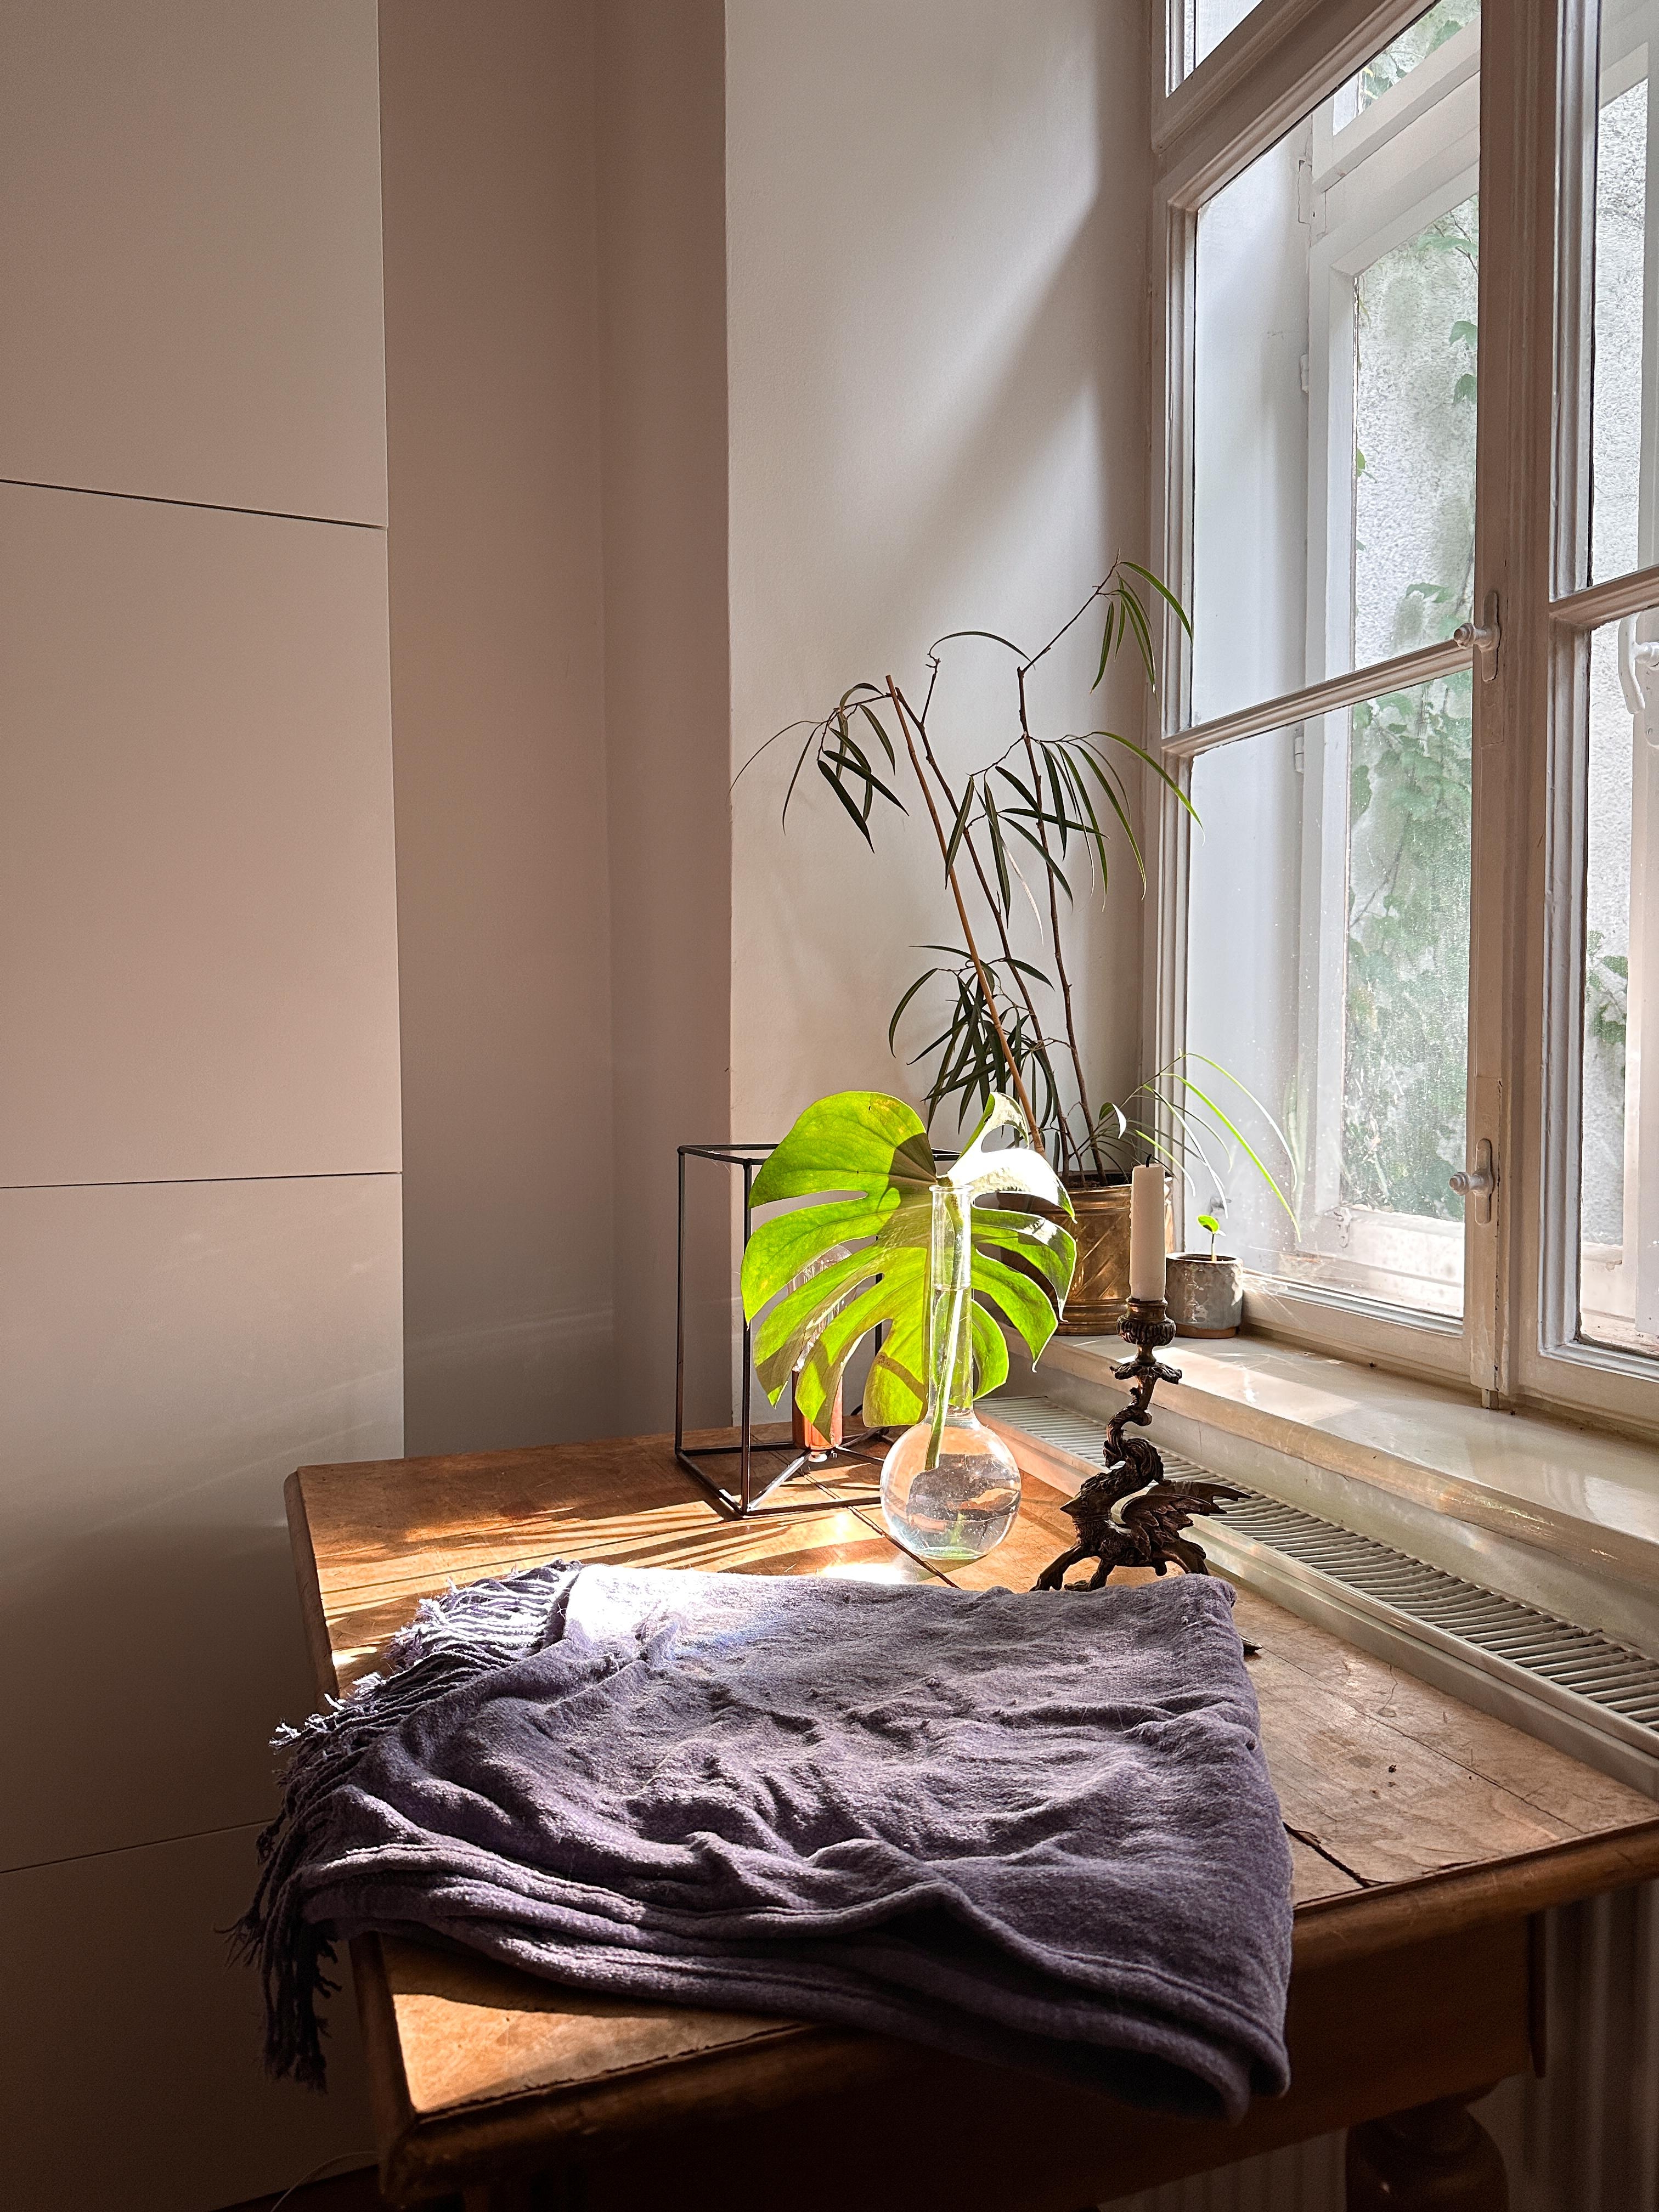 Wohnzimmer Schnappschuss 📷

#Altbau #Kastenfenster #sonne #licht #kerzenständer #vase #deko